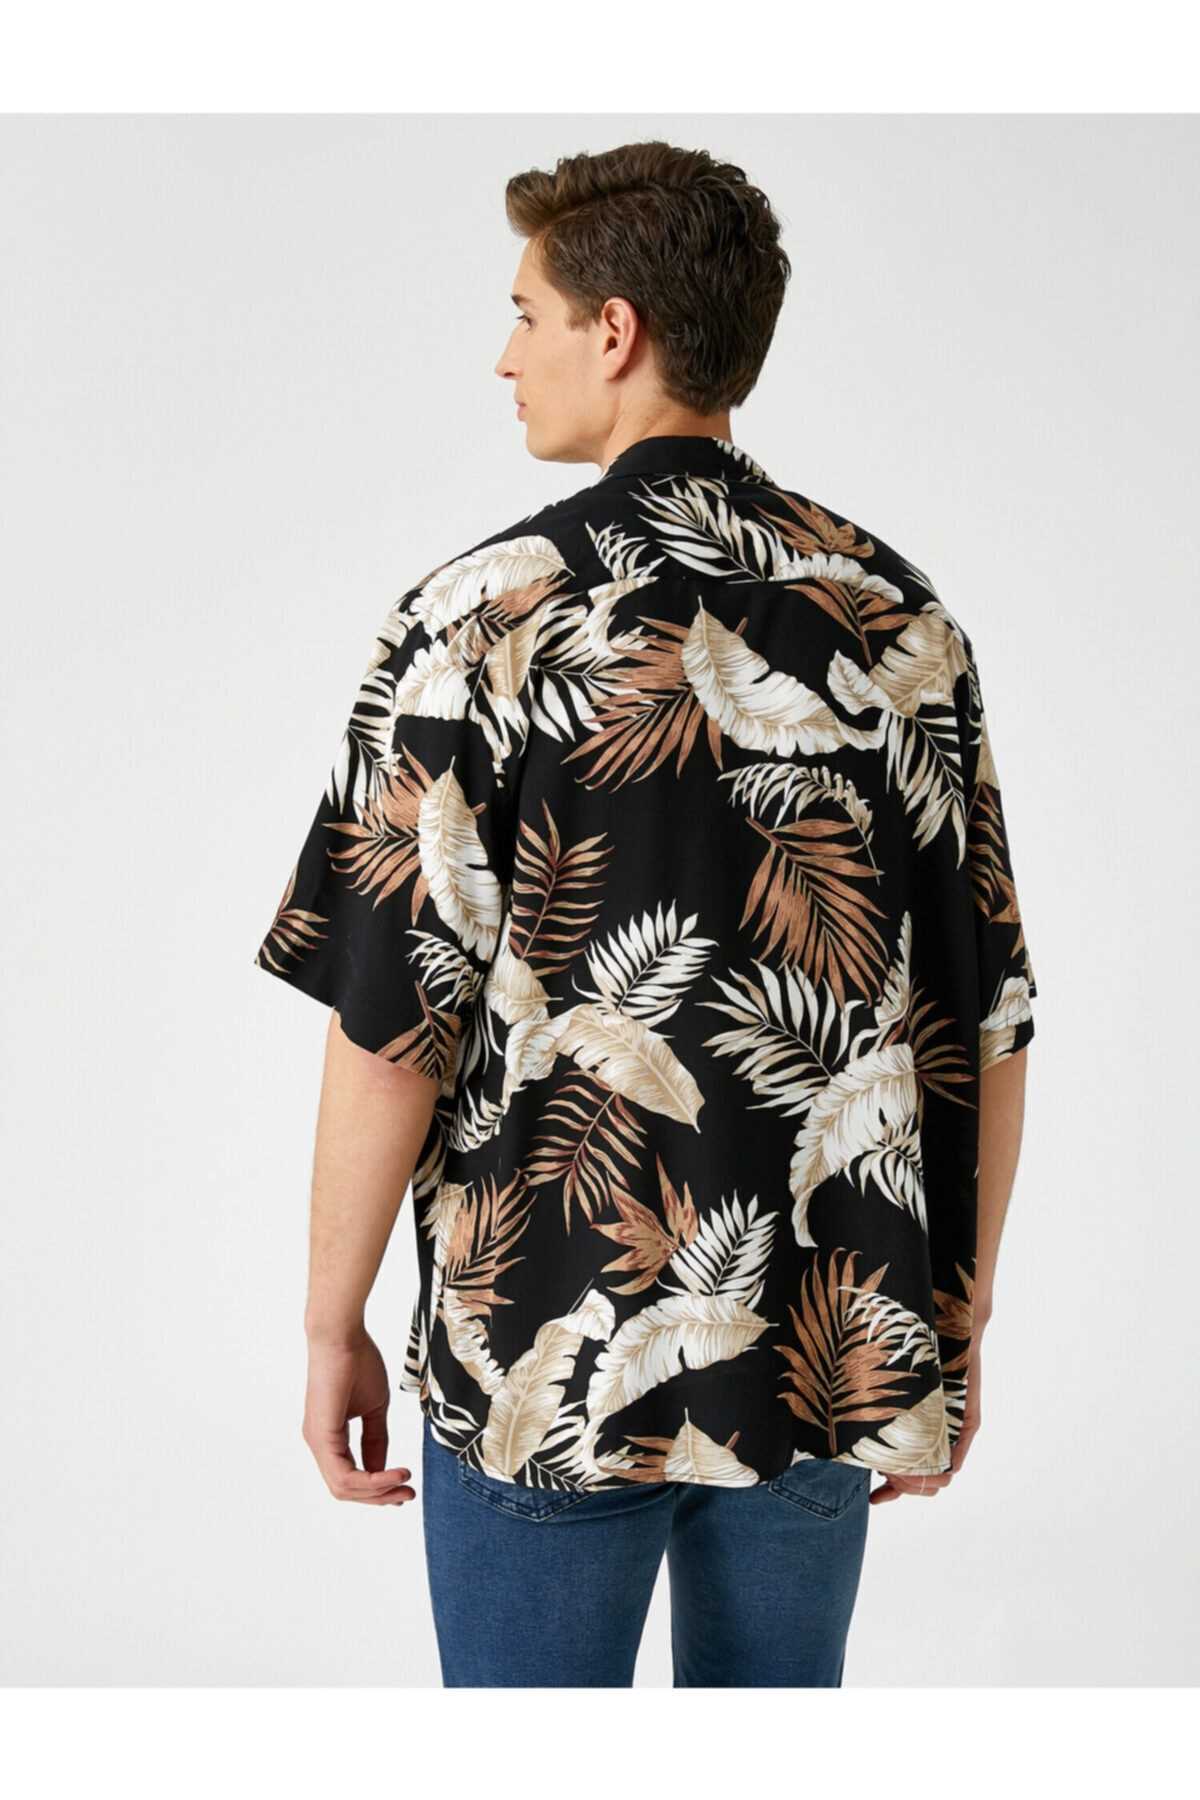 خرید اینترنتی پیراهن مردانه شیک برند کوتون رنگ مشکی کد ty114534219